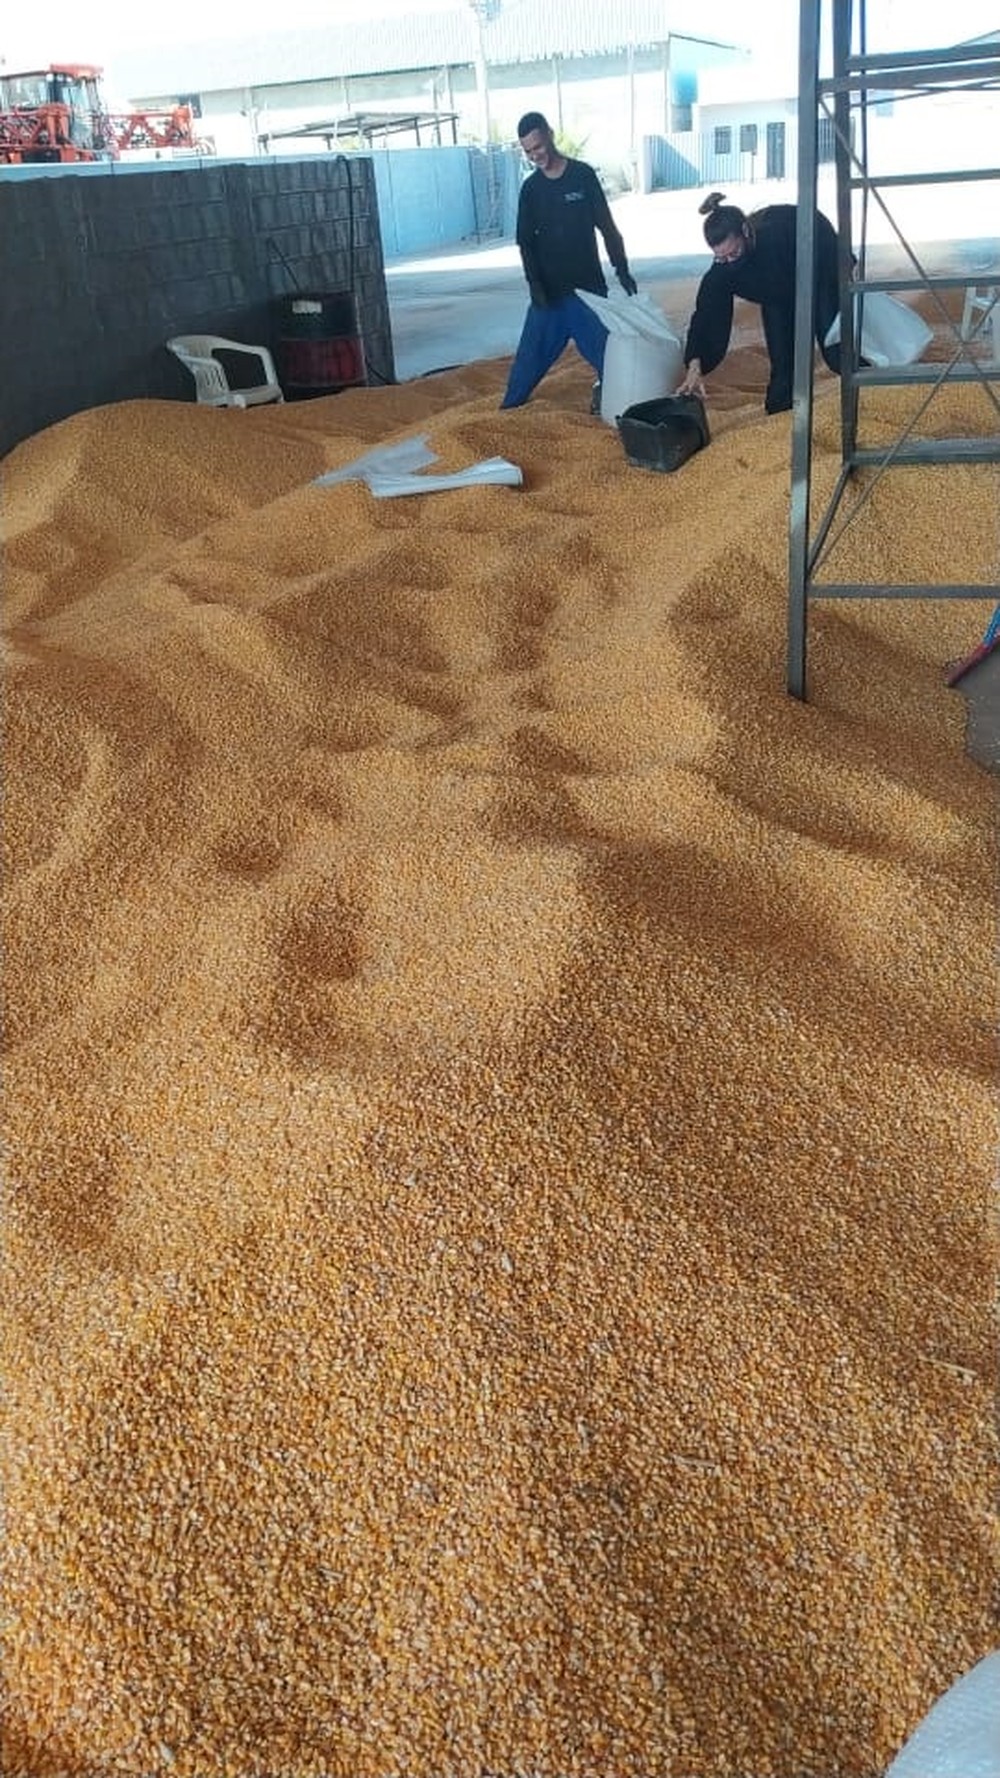 Venda de 50 toneladas de milho furtadas é anunciada em rede social e suspeito é preso em MT